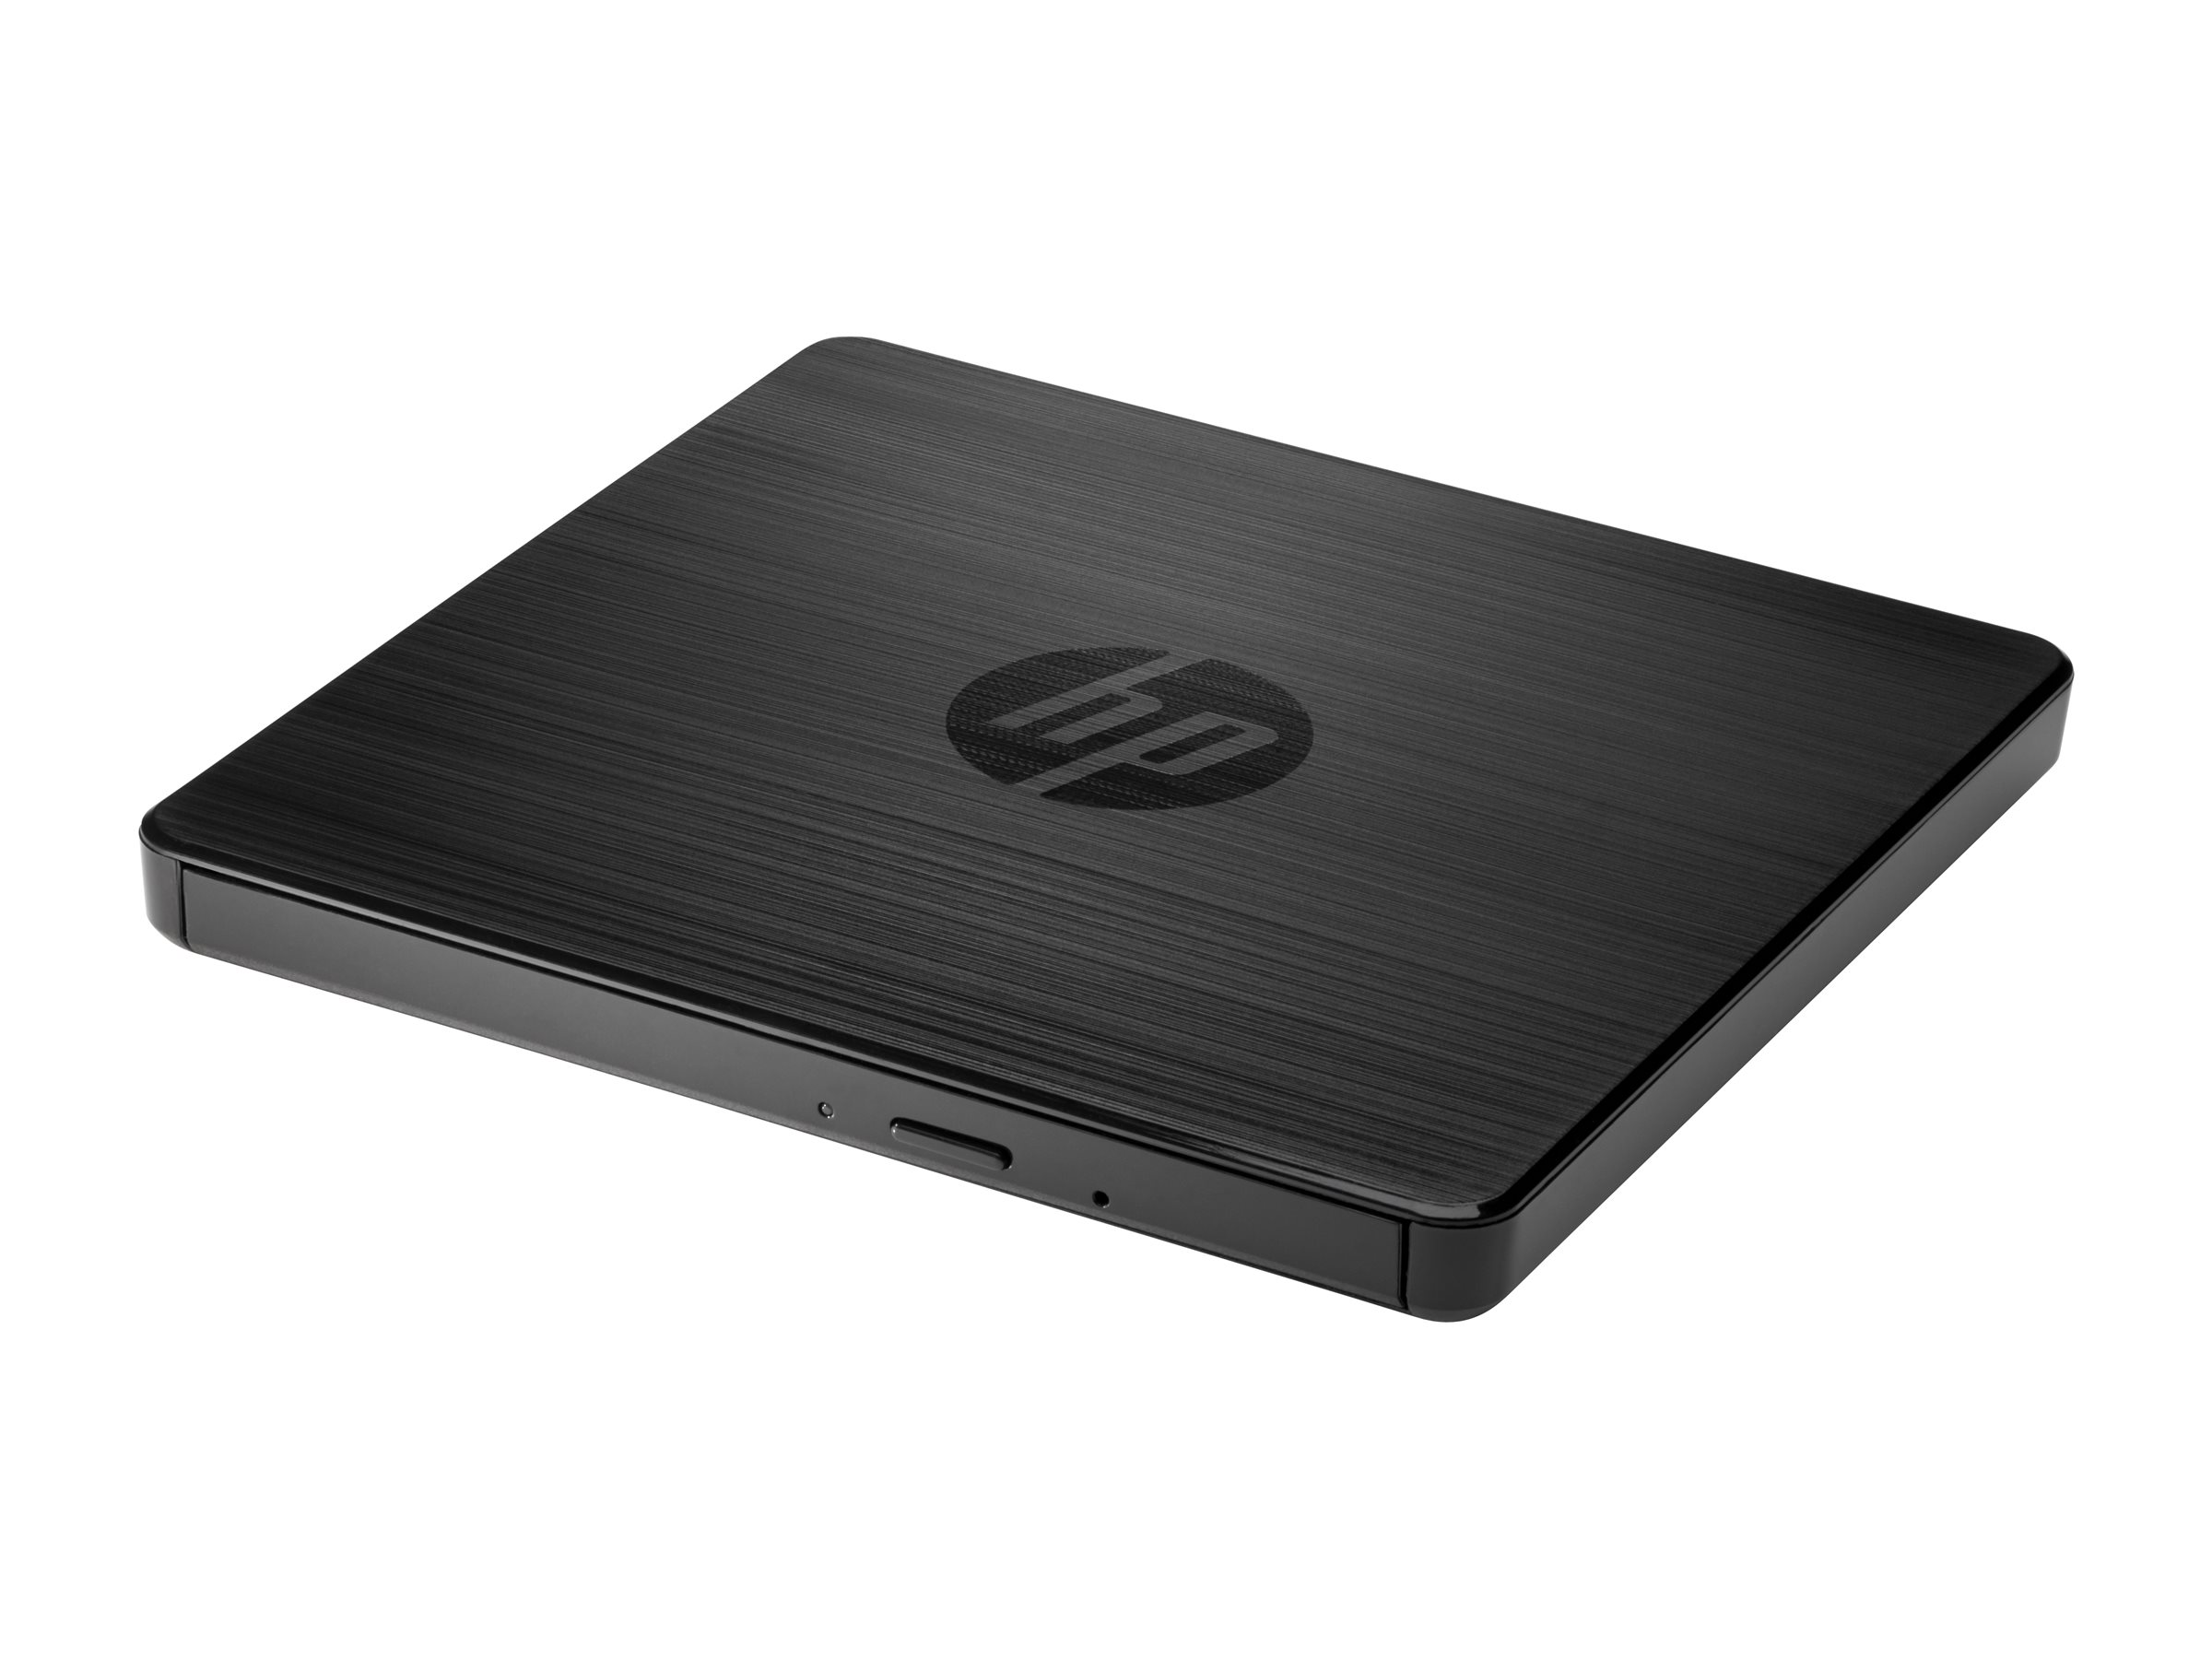 HP - Lecteur de disque - DVD±RW - USB 2.0 - externe - pour Pavilion 24, 27, 510, 590, 595, TP01 - F6V97AA#ABB - Lecteurs DVD